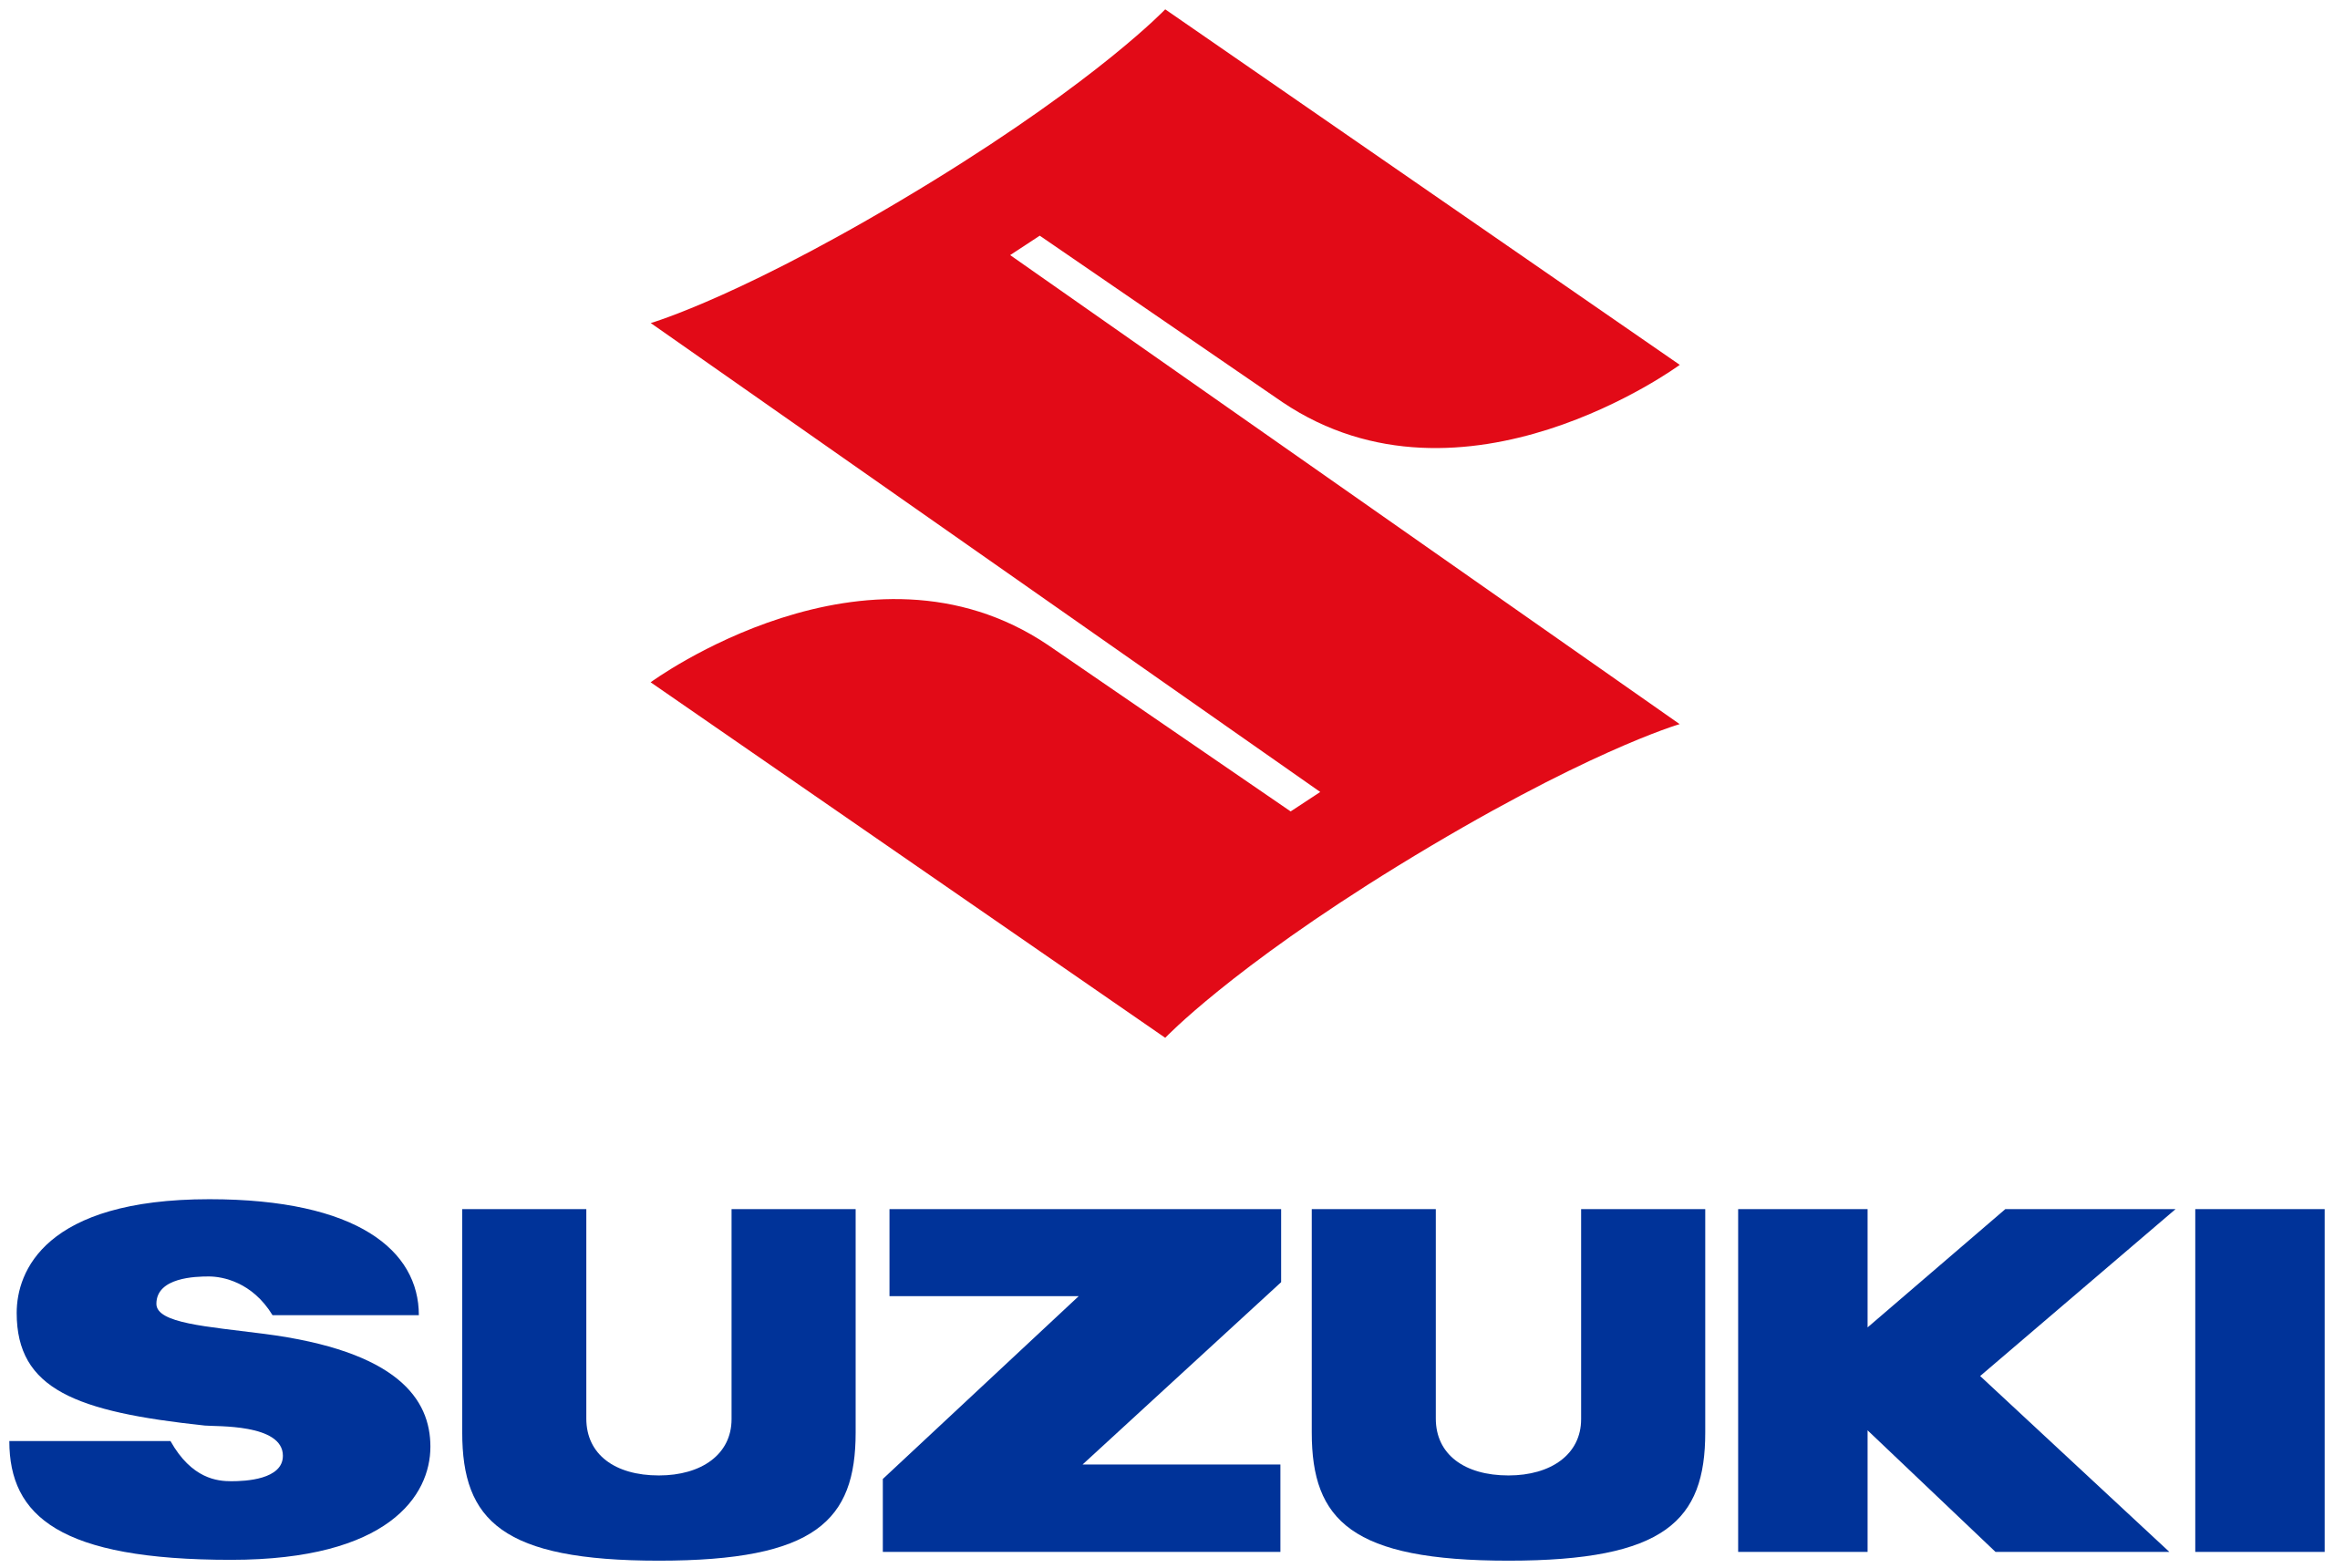 Suzuki Motor images